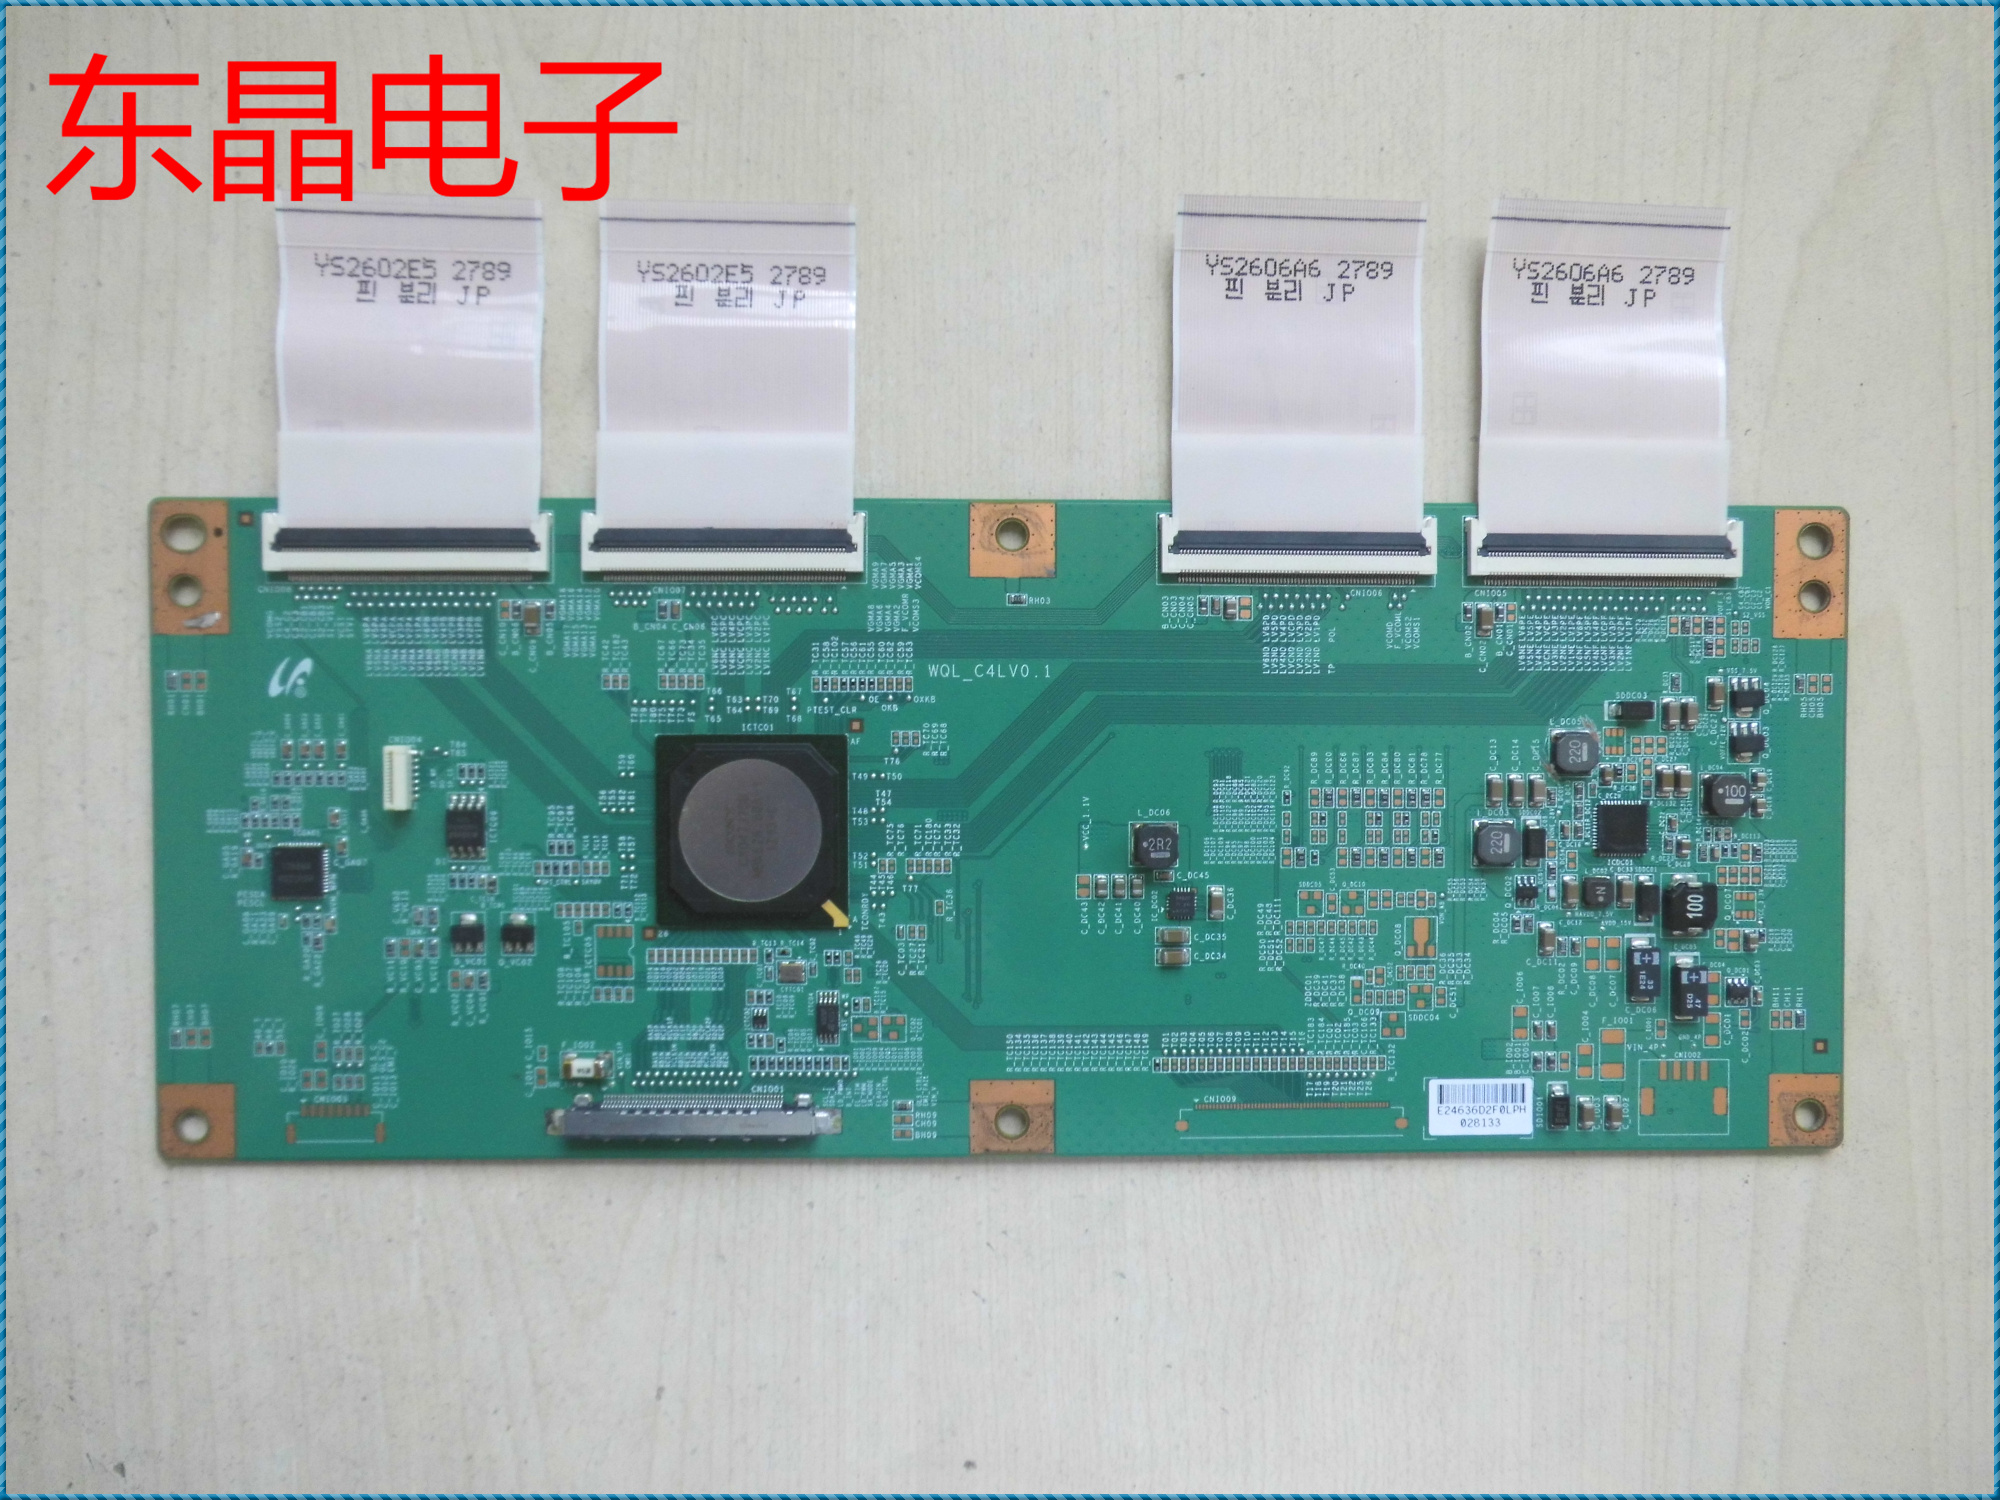 适用于索尼电视KDL-46HX750逻辑板WQL-C4LV0.1 46寸用 电子元器件市场 PCB电路板/印刷线路板 原图主图